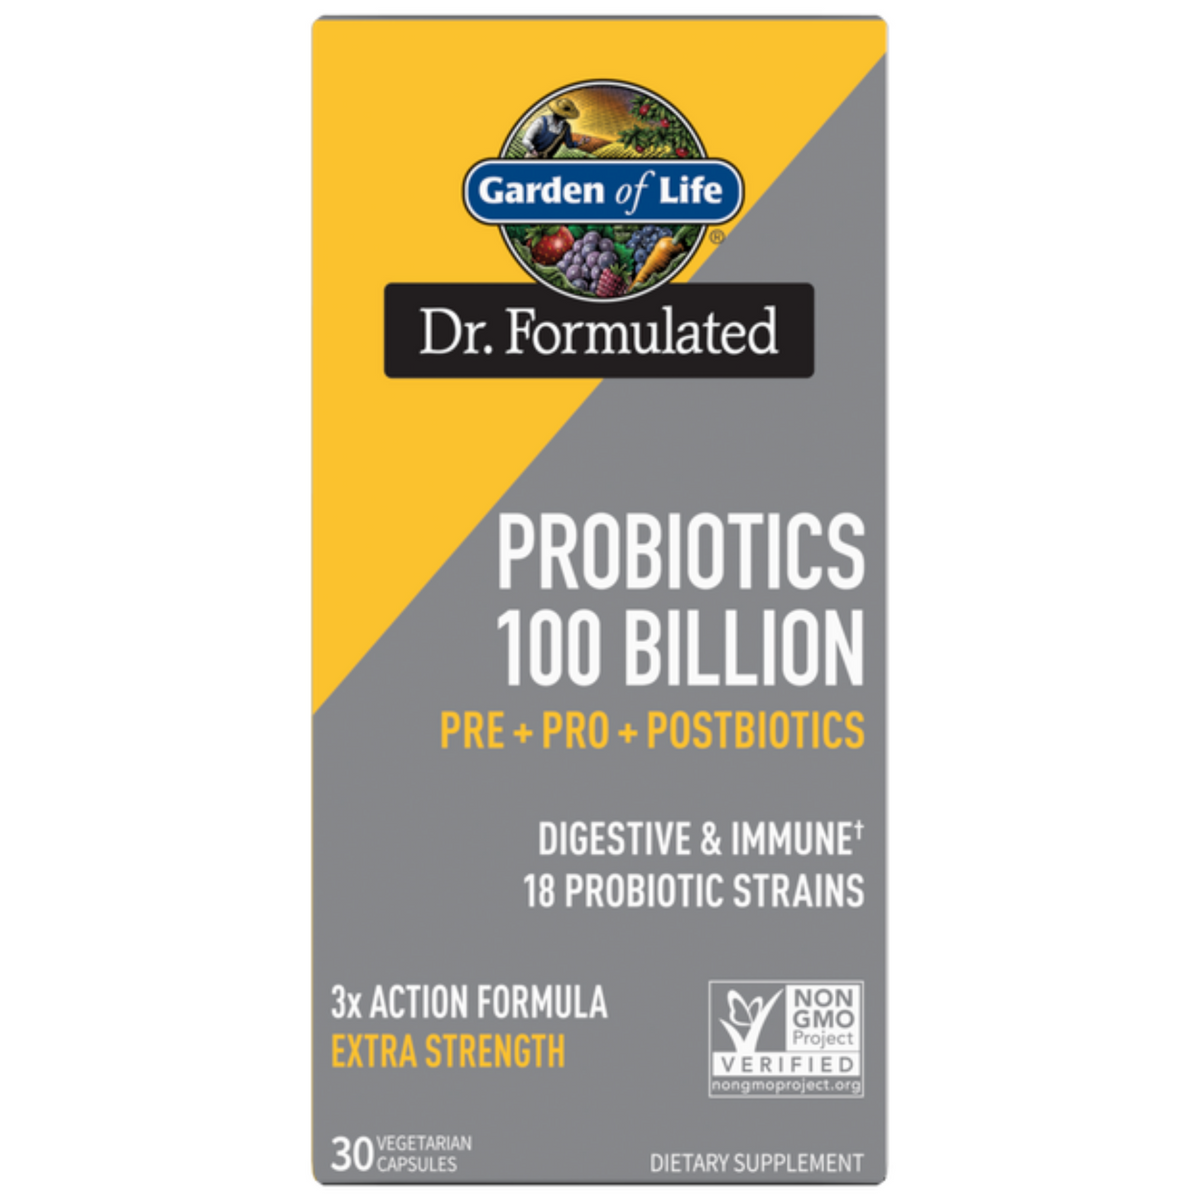 Primary Image of Probiotics 100 Billion Capsules